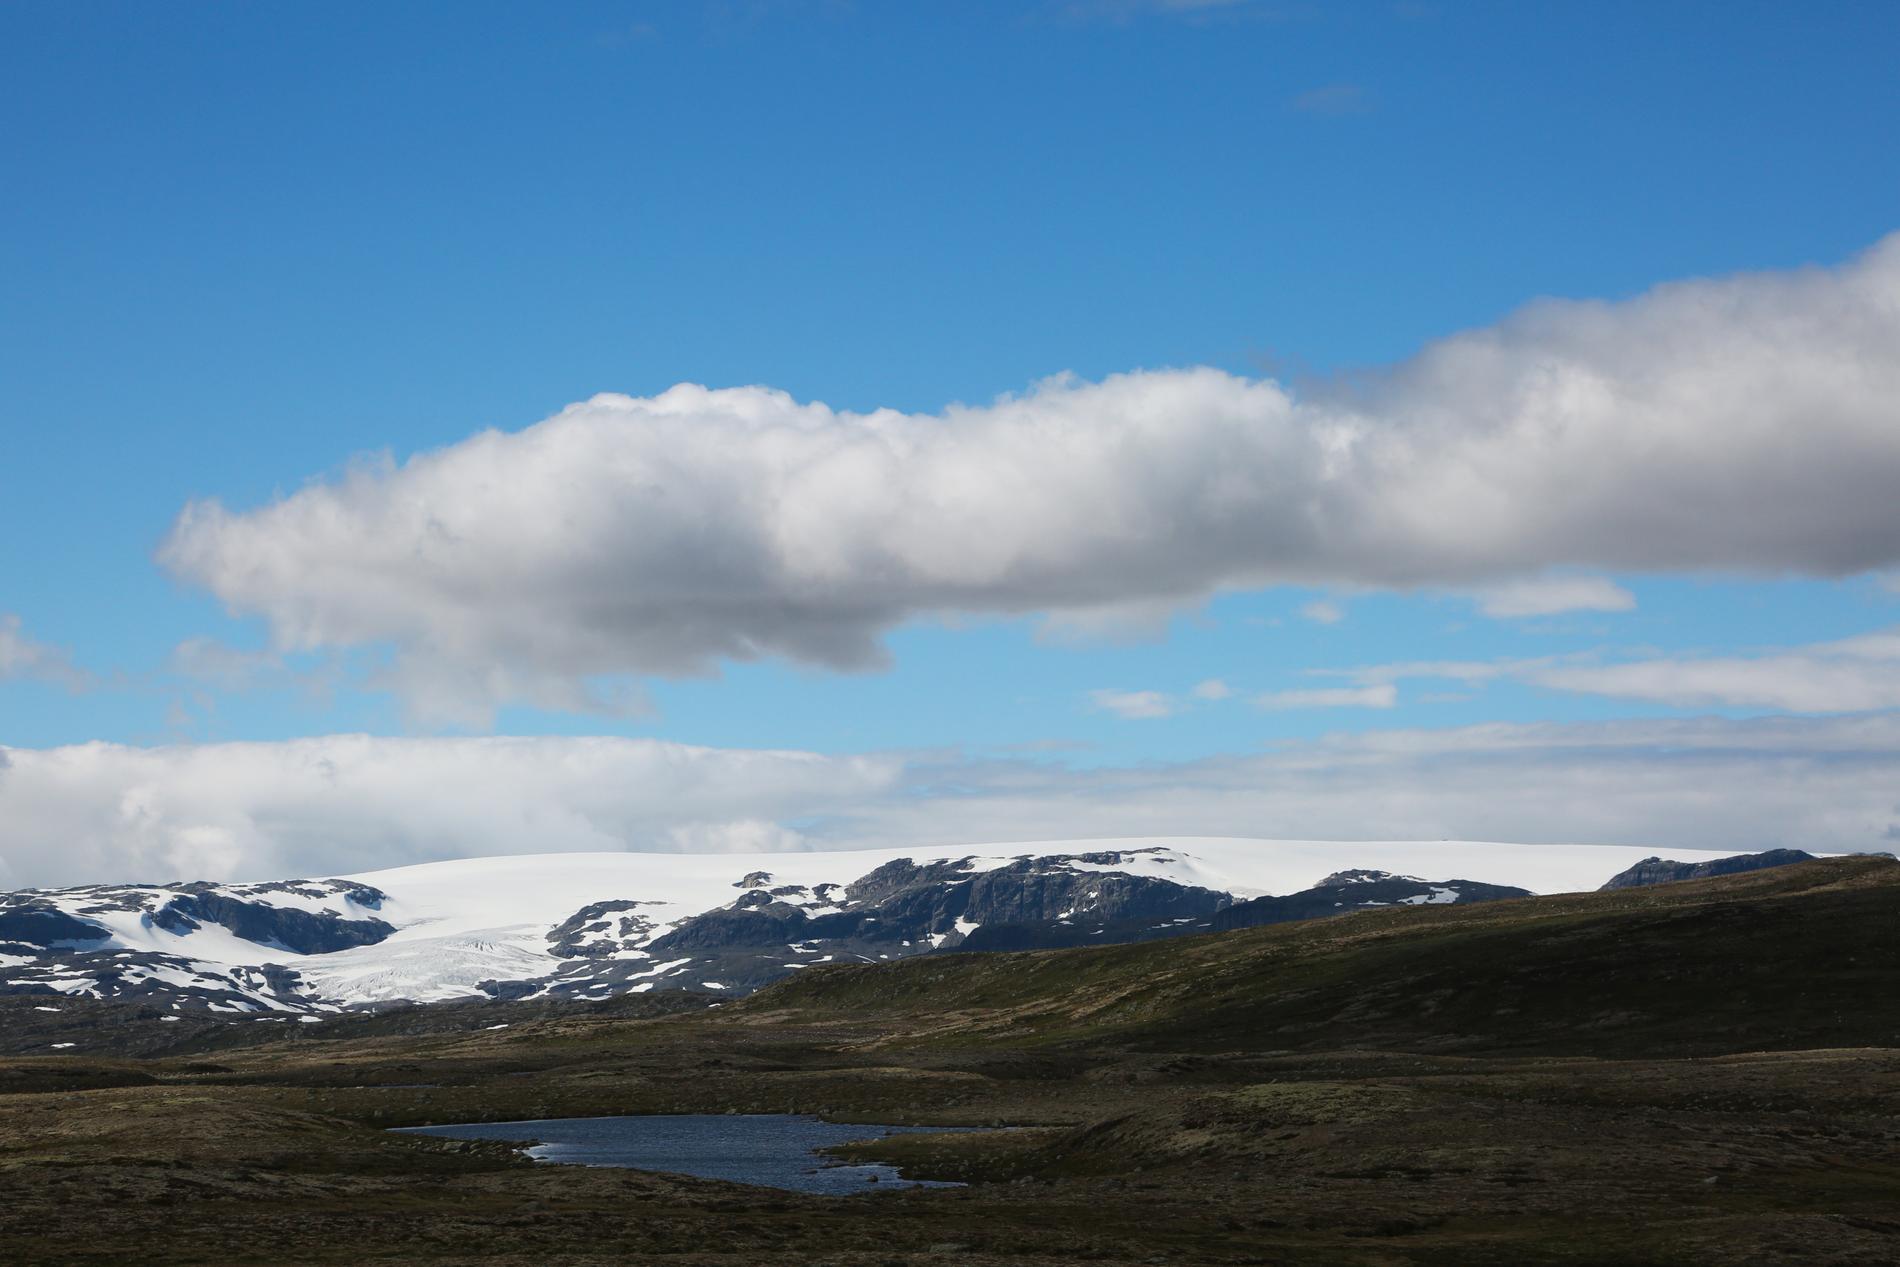 Turen nordover starter lørdag og går over Hardangervidda (bildet), gjennom Jotun- og Trollheimen, Steinkjær og Mosjøen. All overnatting er planlagt utendørs. 